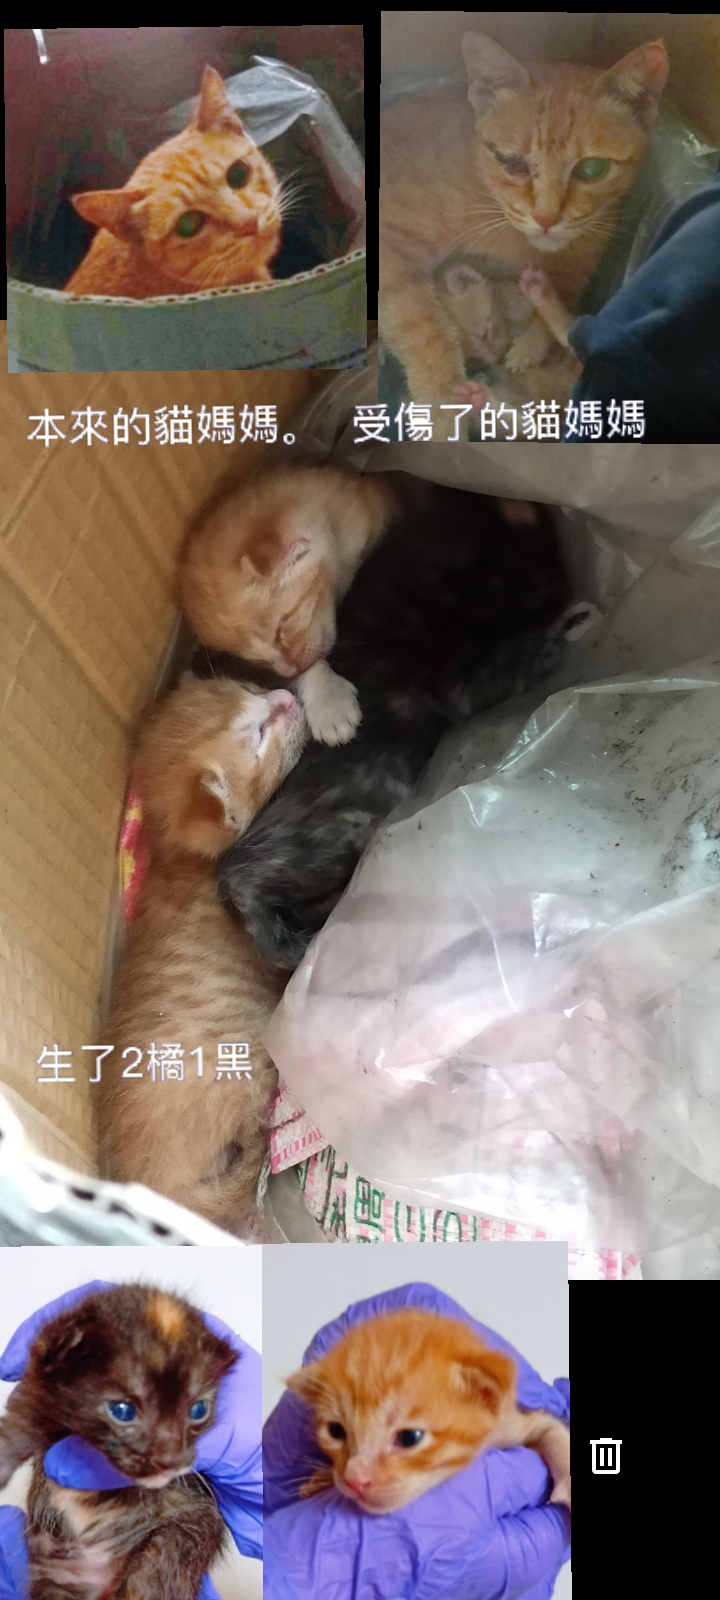  板橋-等待救援受傷貓媽媽跟3小隻小小貓